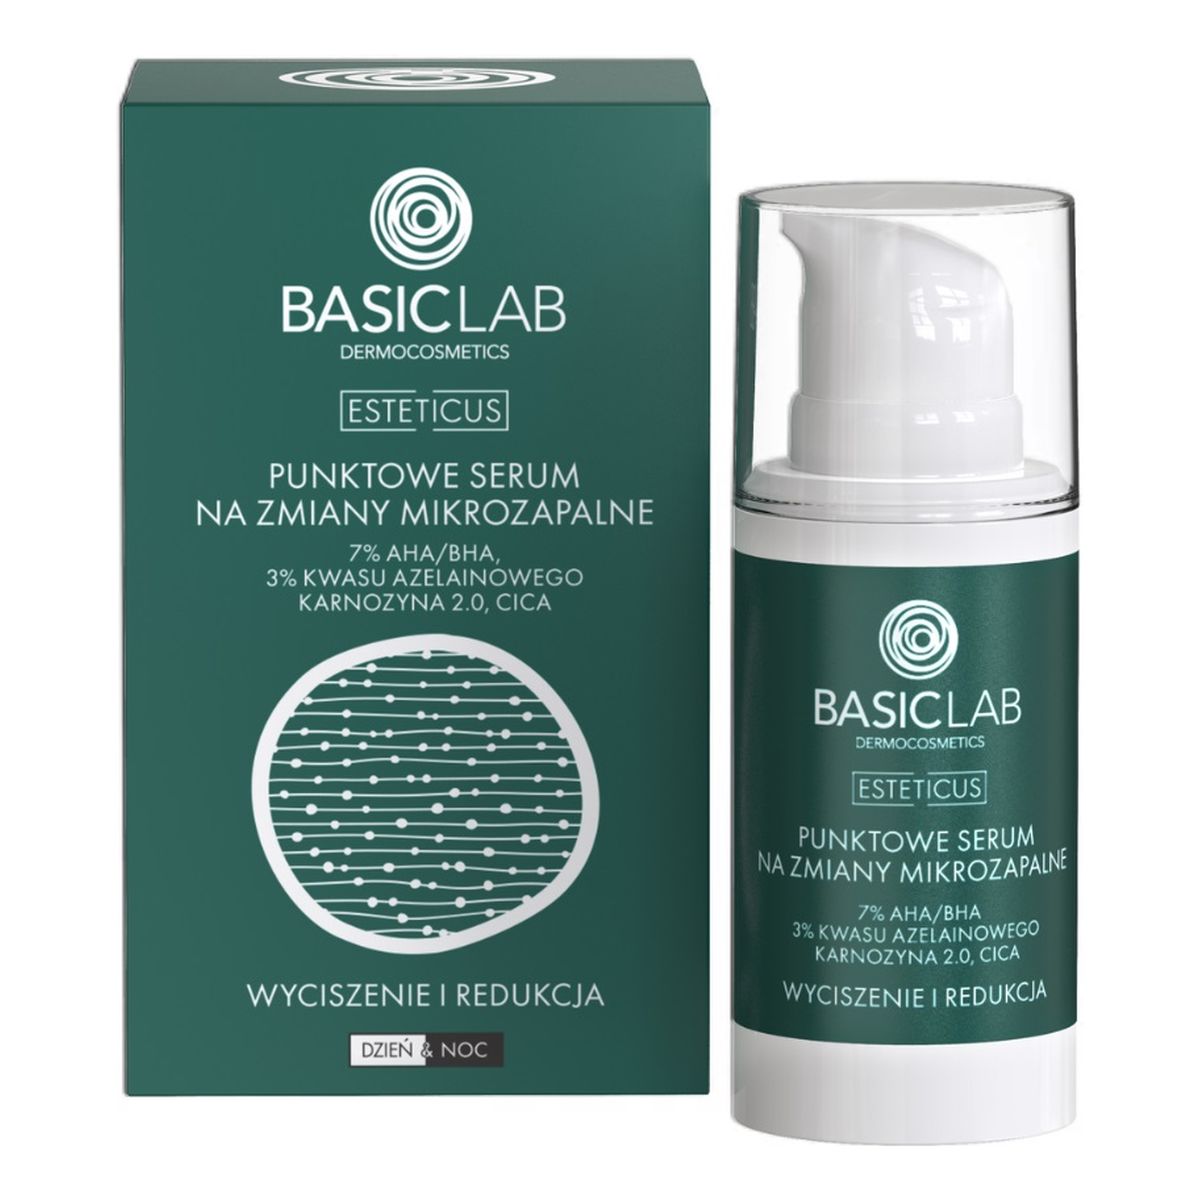 Basiclab Esteticus punktowe serum na zmiany mikrozapalne z 7% aha/bha i 3% kwasu azelainowego wyciszenie i redukcja 15ml